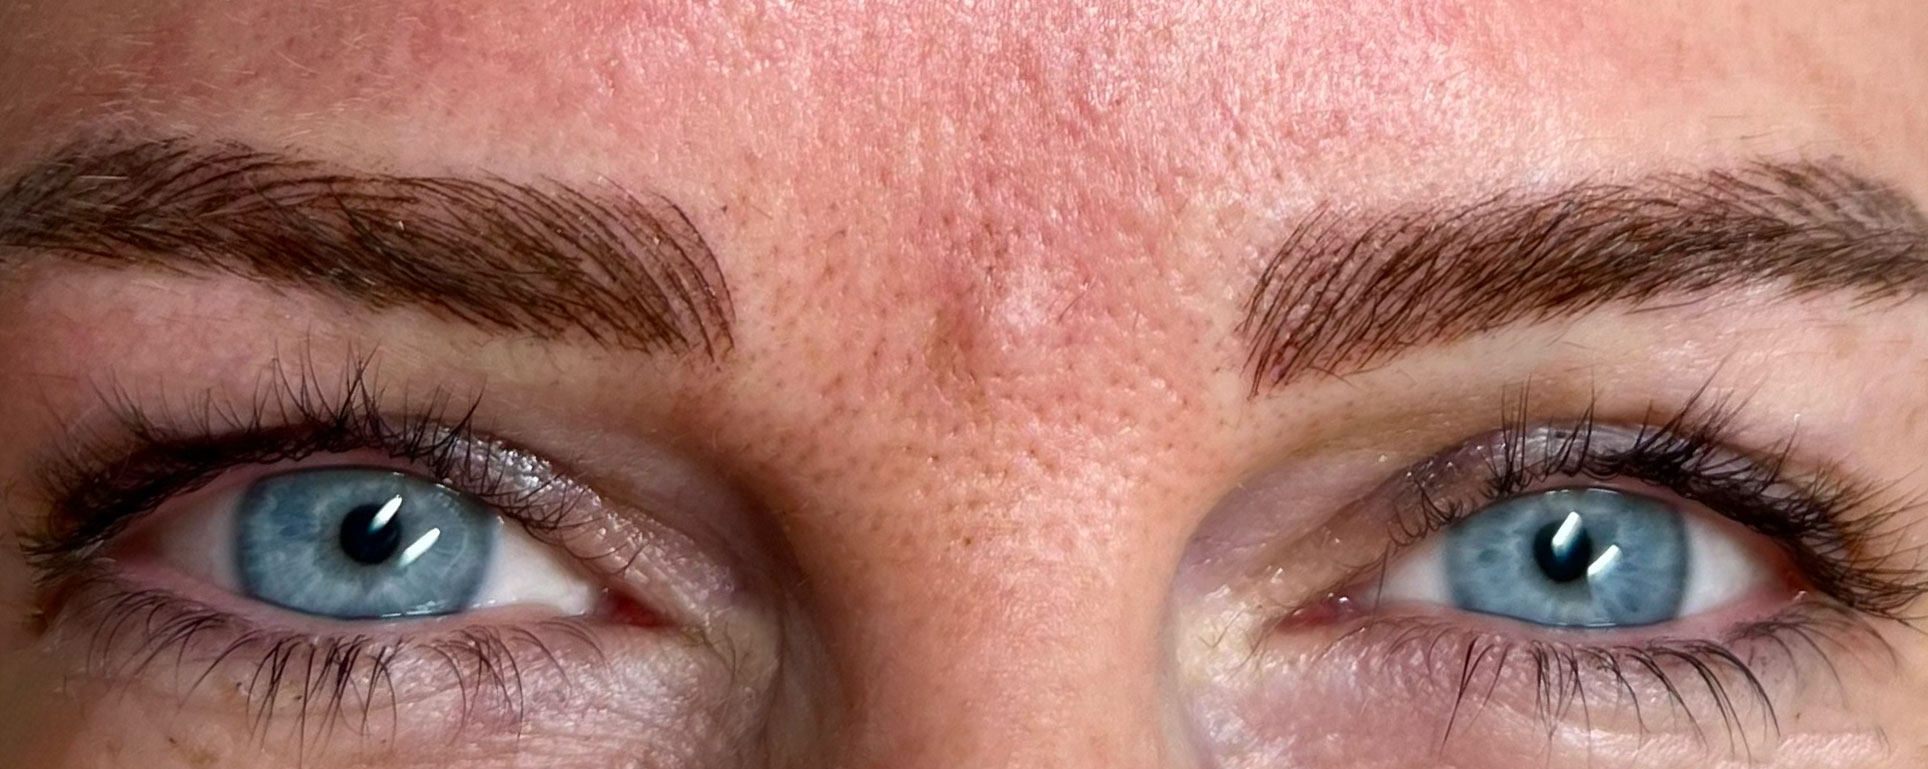 Eine Nahaufnahme der Augen einer Frau mit blauen Augen und Microblading.